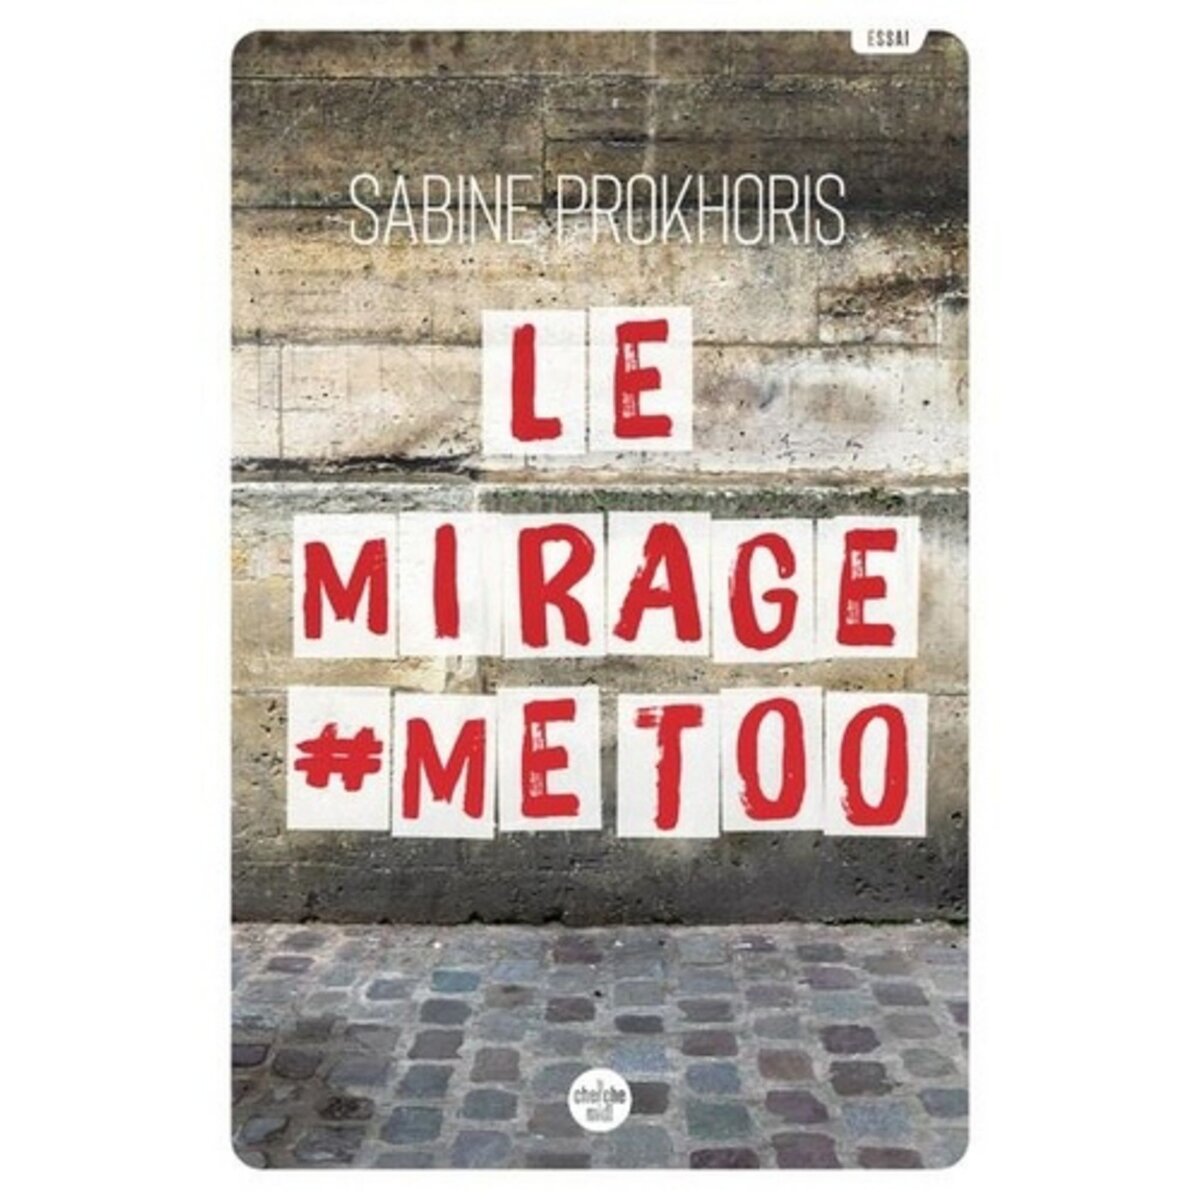  LE MIRAGE #METOO. REFLEXIONS A PARTIR DU CAS FRANCAIS, Prokhoris Sabine